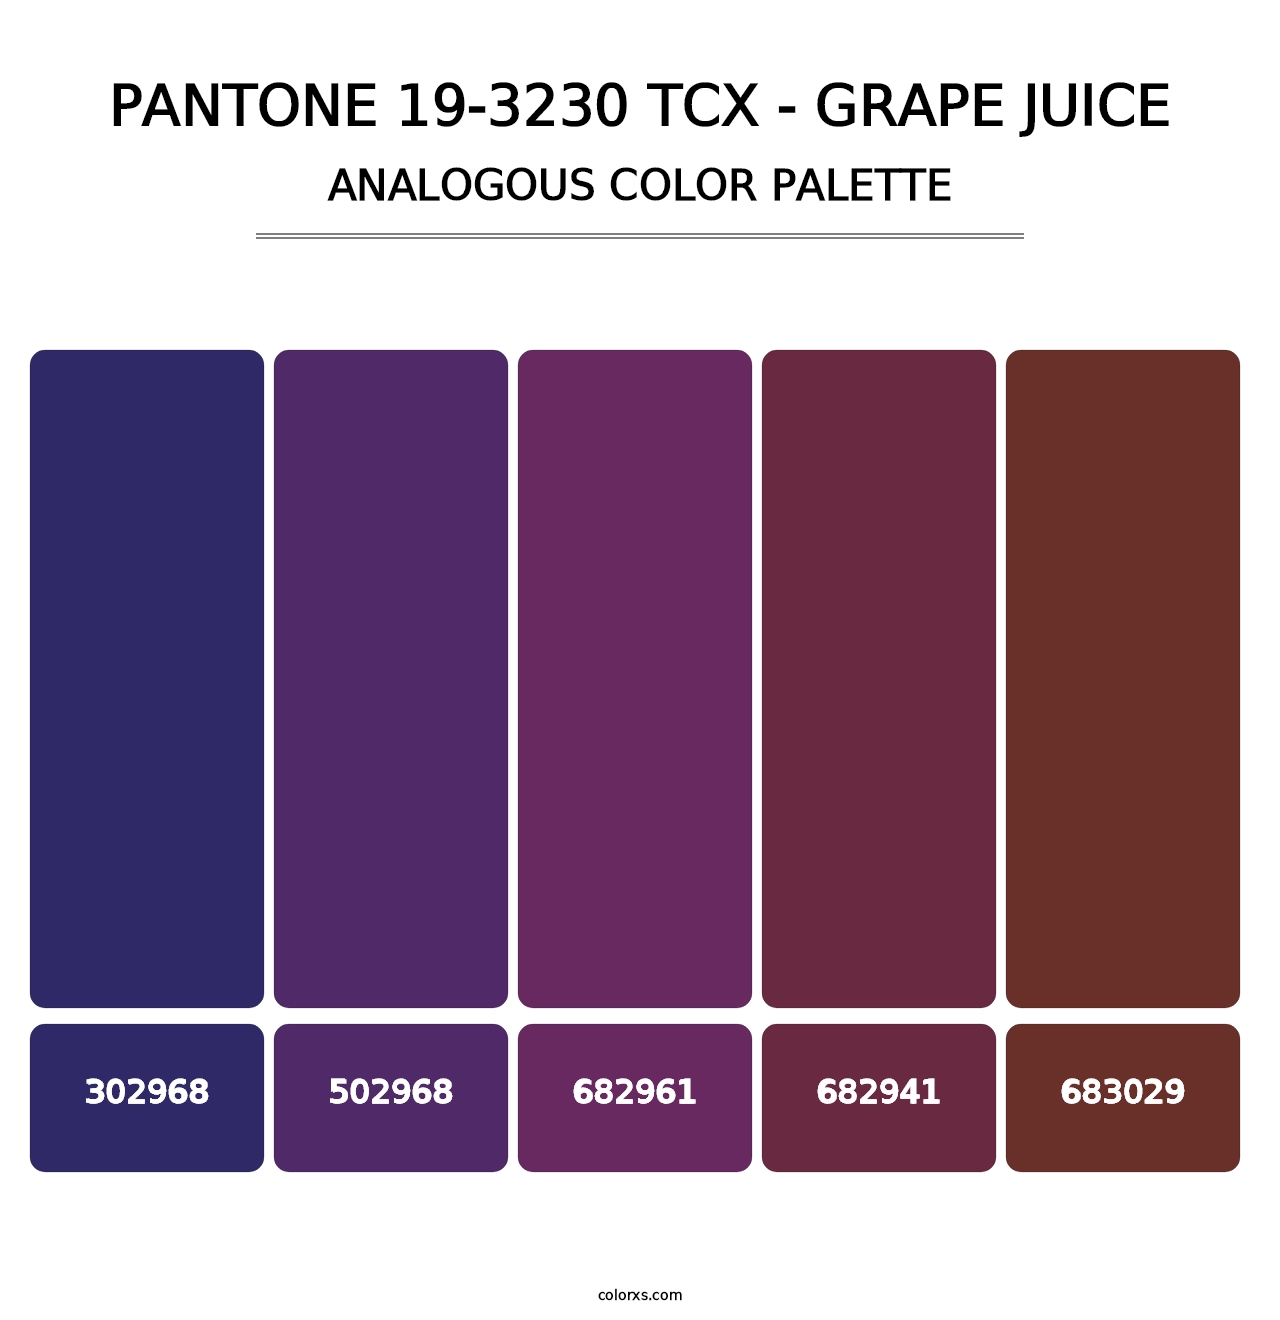 PANTONE 19-3230 TCX - Grape Juice - Analogous Color Palette